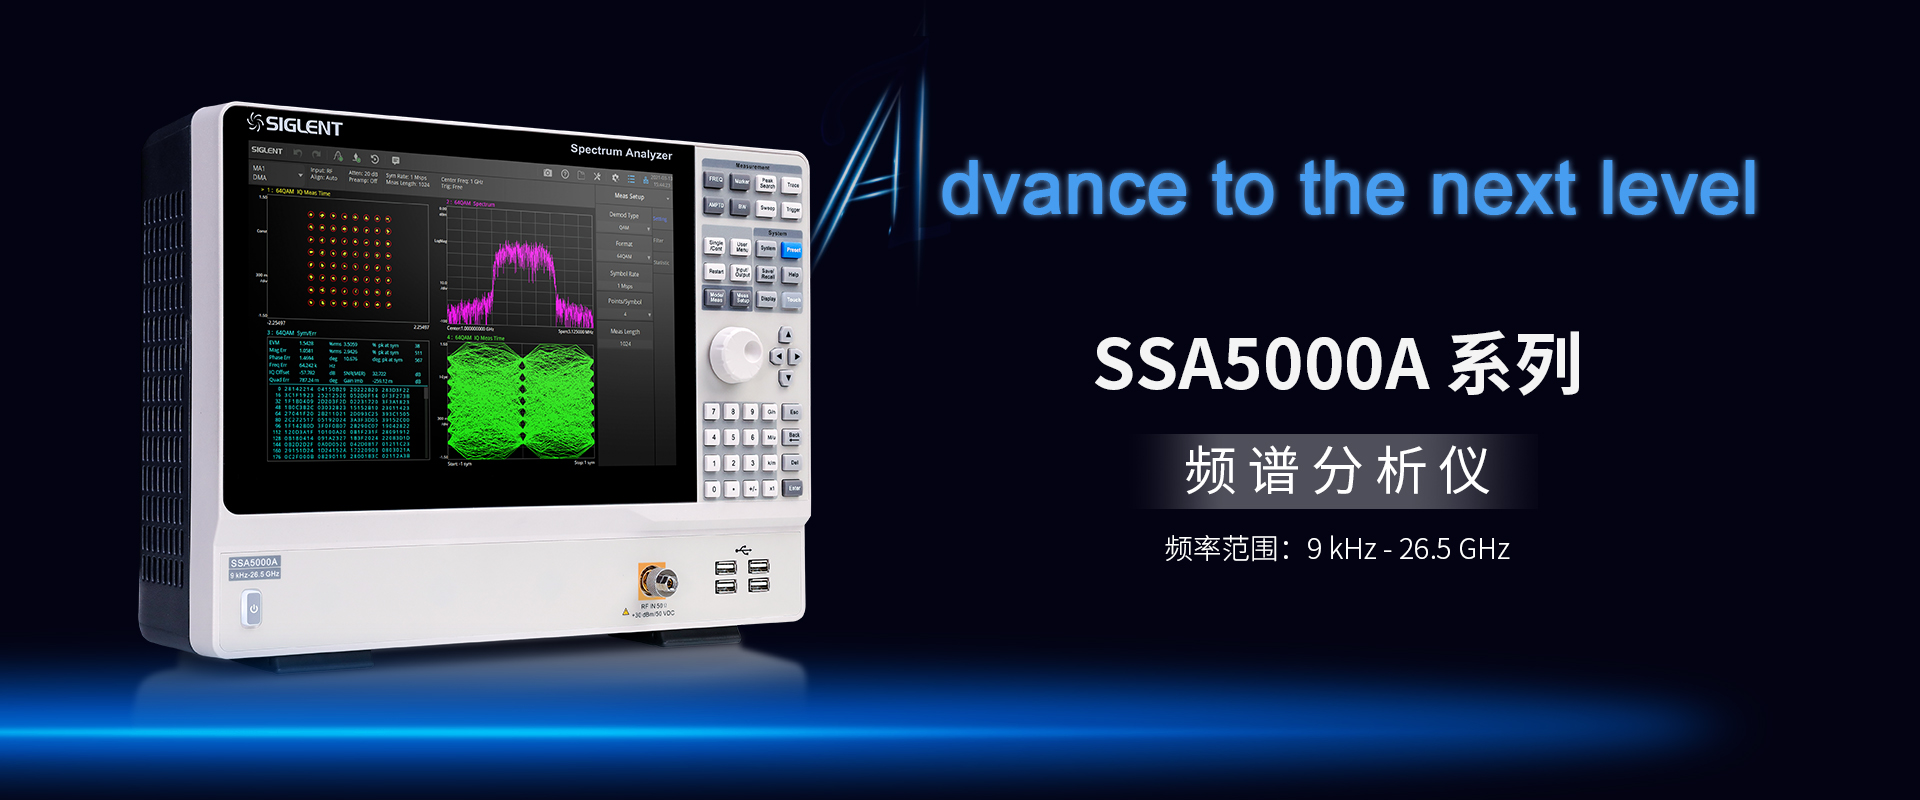 SSA5000